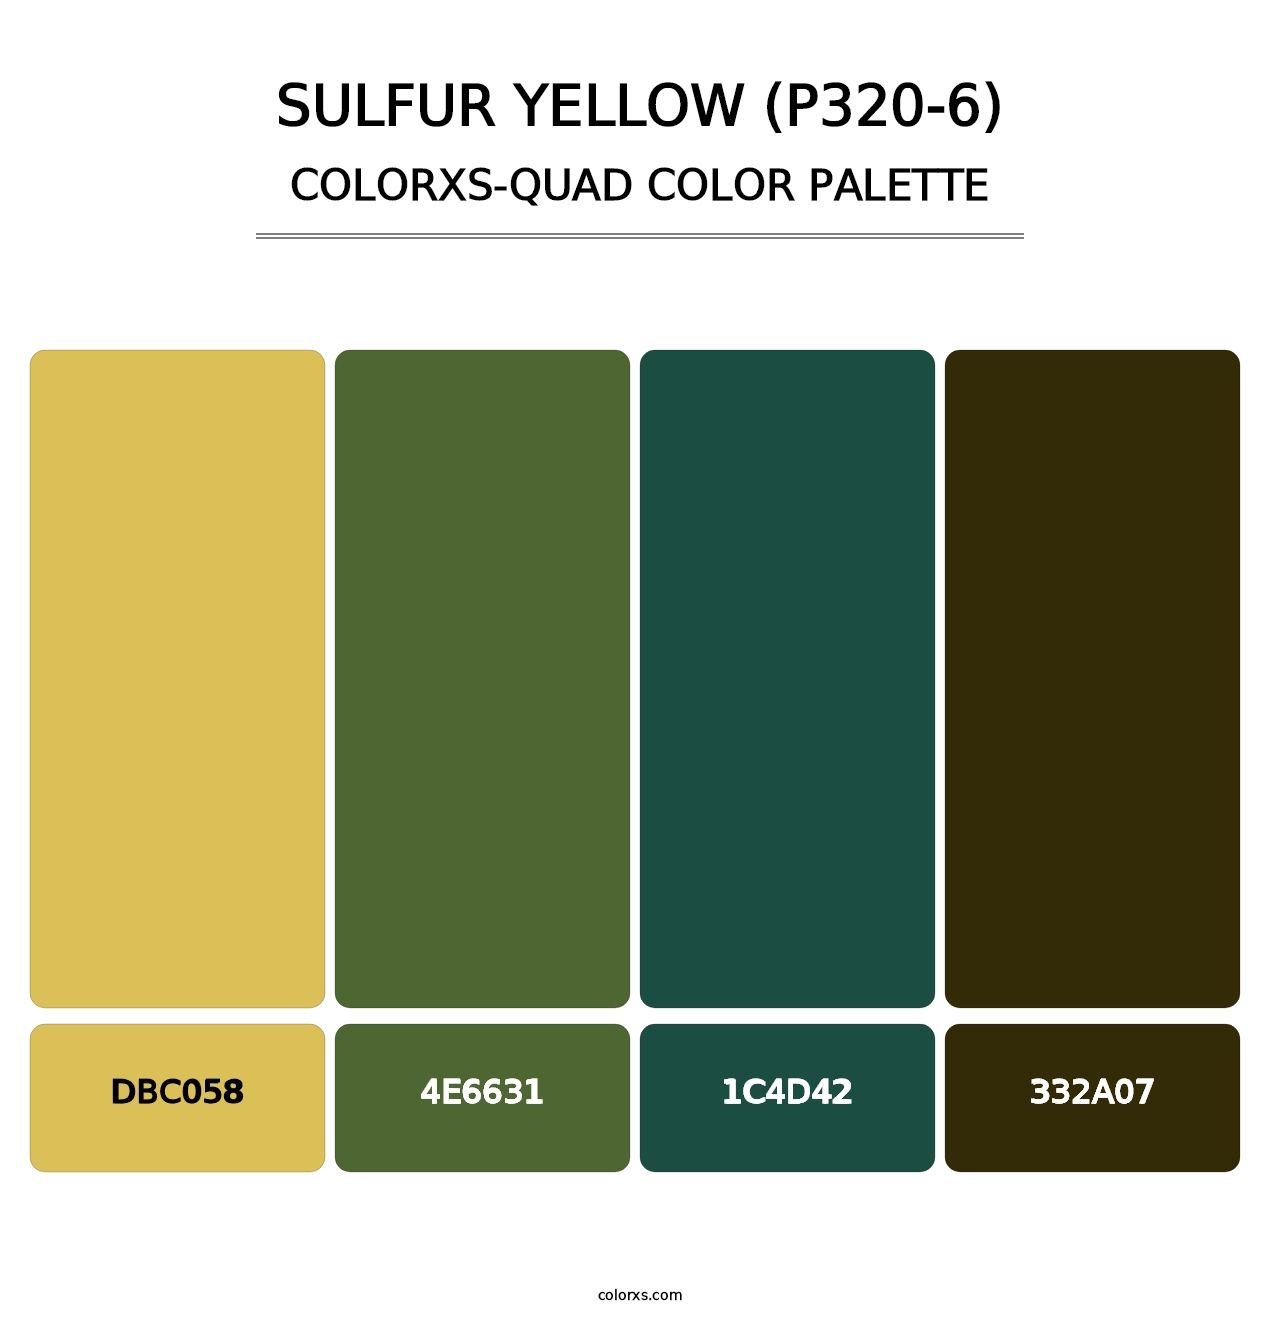 Sulfur Yellow (P320-6) - Colorxs Quad Palette